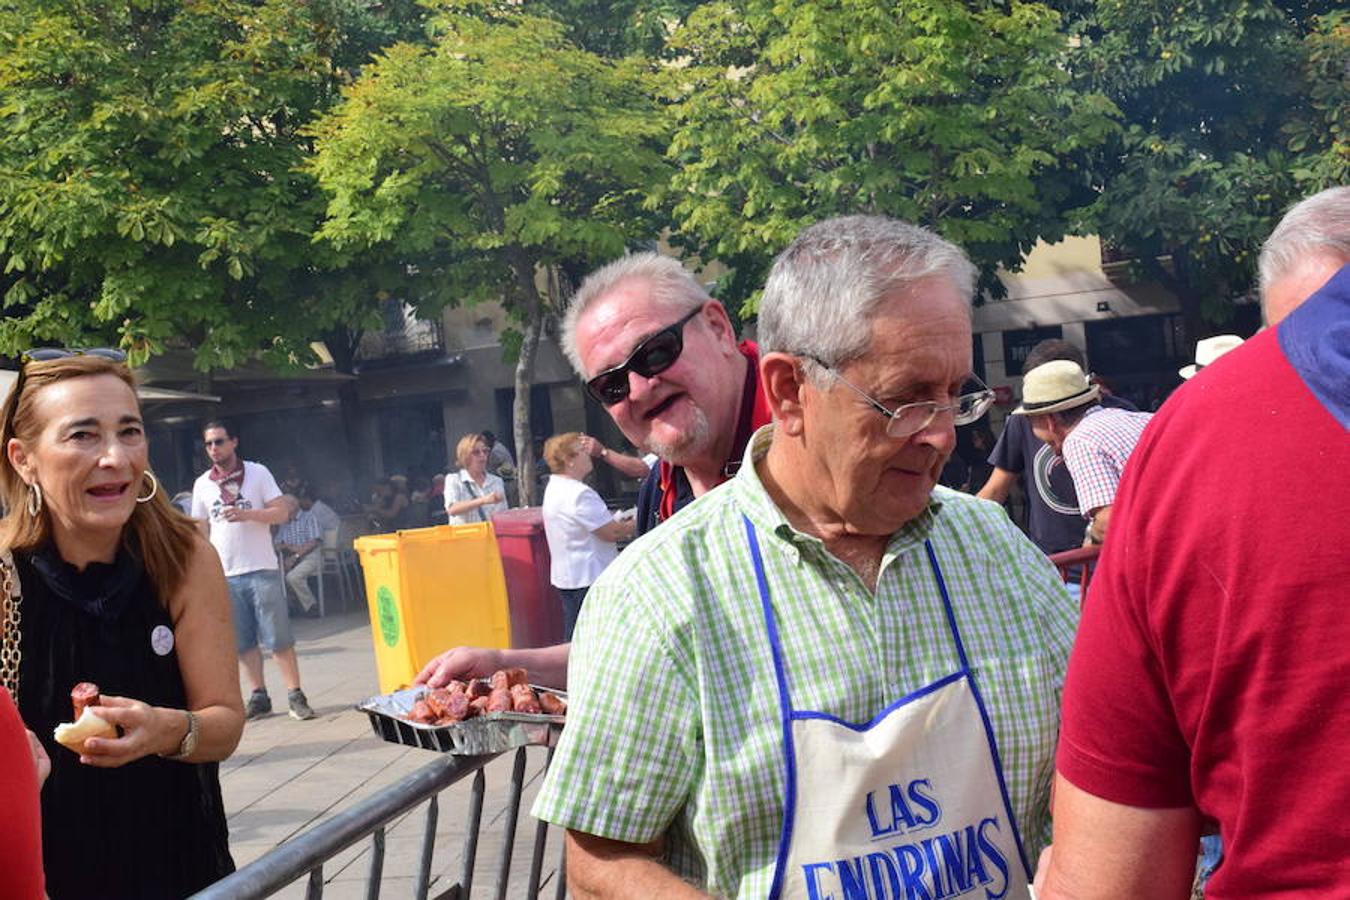 Festival de chuletillas asadas en la Plaza del Mercado con motivo de la Semana Gastronómica que se está celebrando a lo largo de las fiestas de San Mateo.